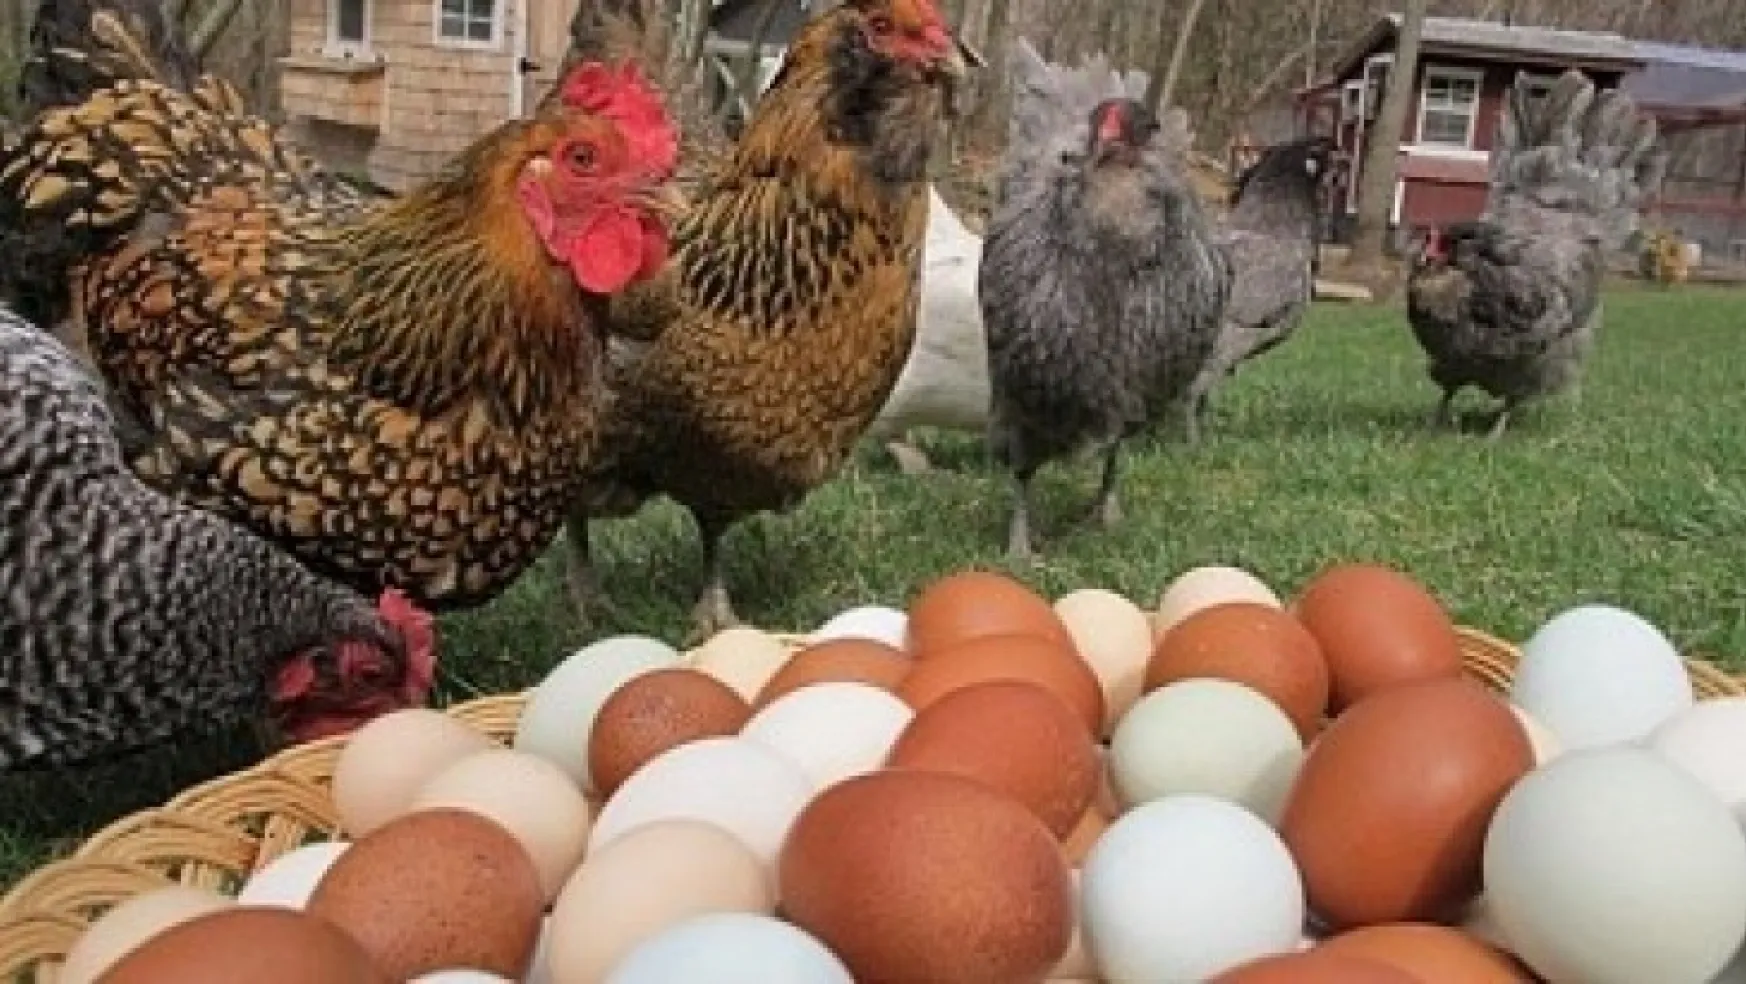 Tavuk eti üretimi 183 bin 713 ton, tavuk yumurtası üretimi 1,8 milyar adet olarak gerçekleşti